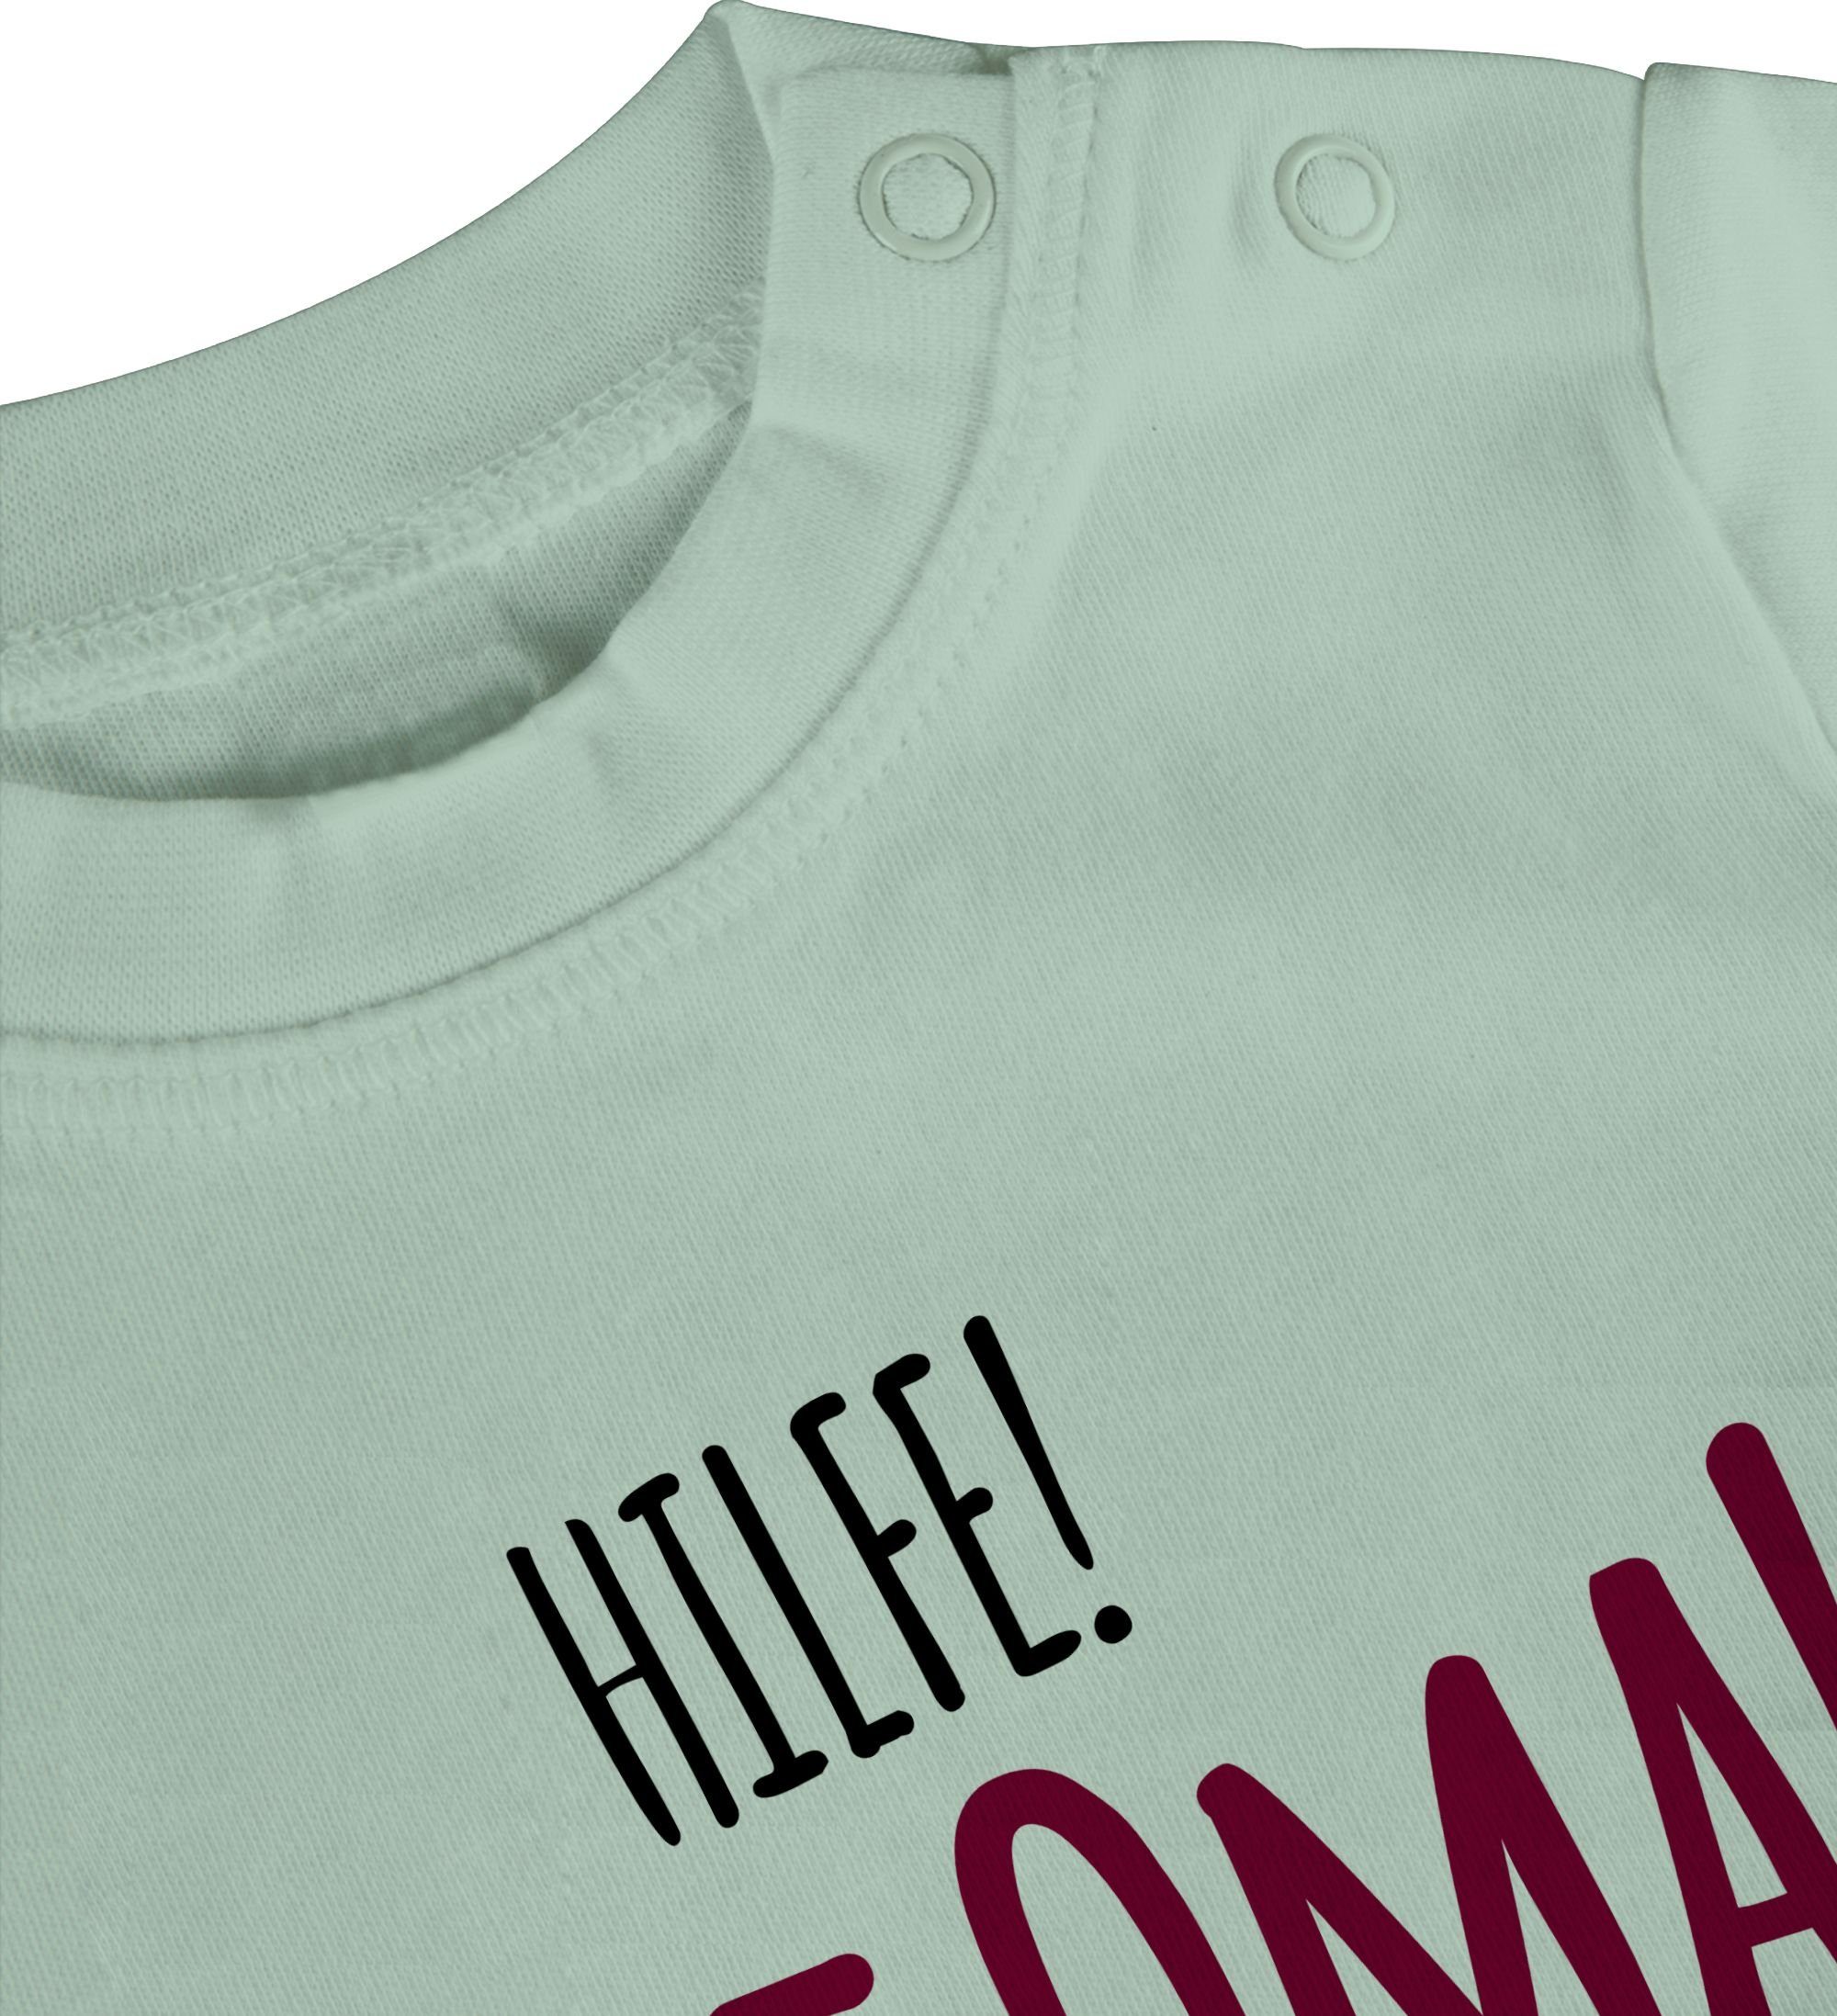 Geschenk Hilfe Holt Omi 1 Mintgrün Baby - T-Shirt Geburt Sprüche Oma Shirtracer